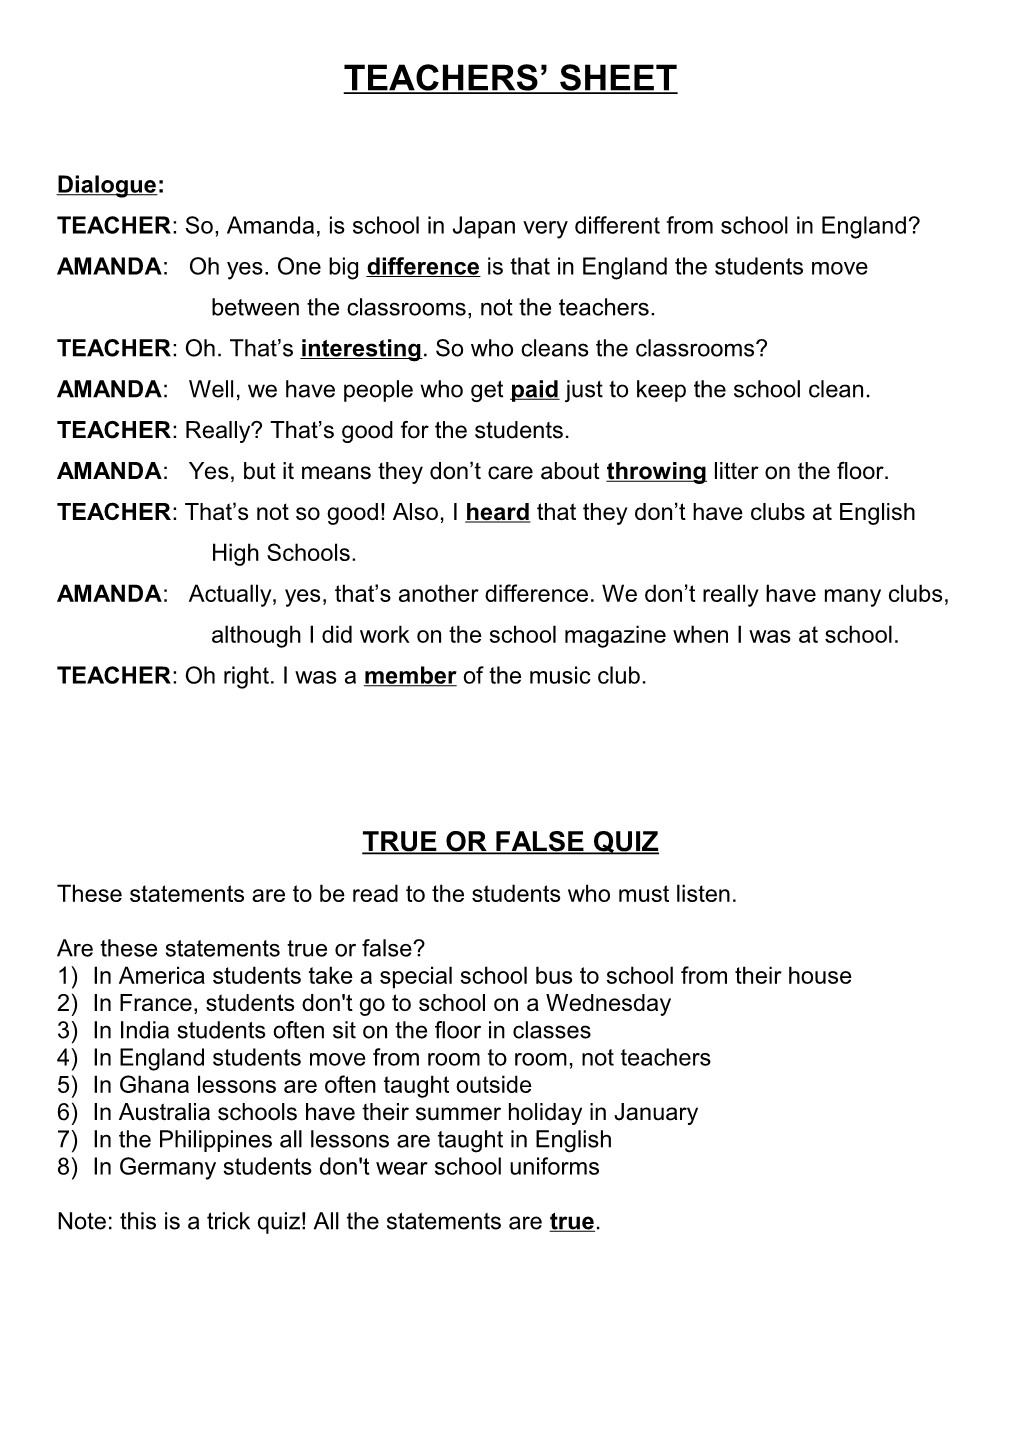 True Or False Quiz